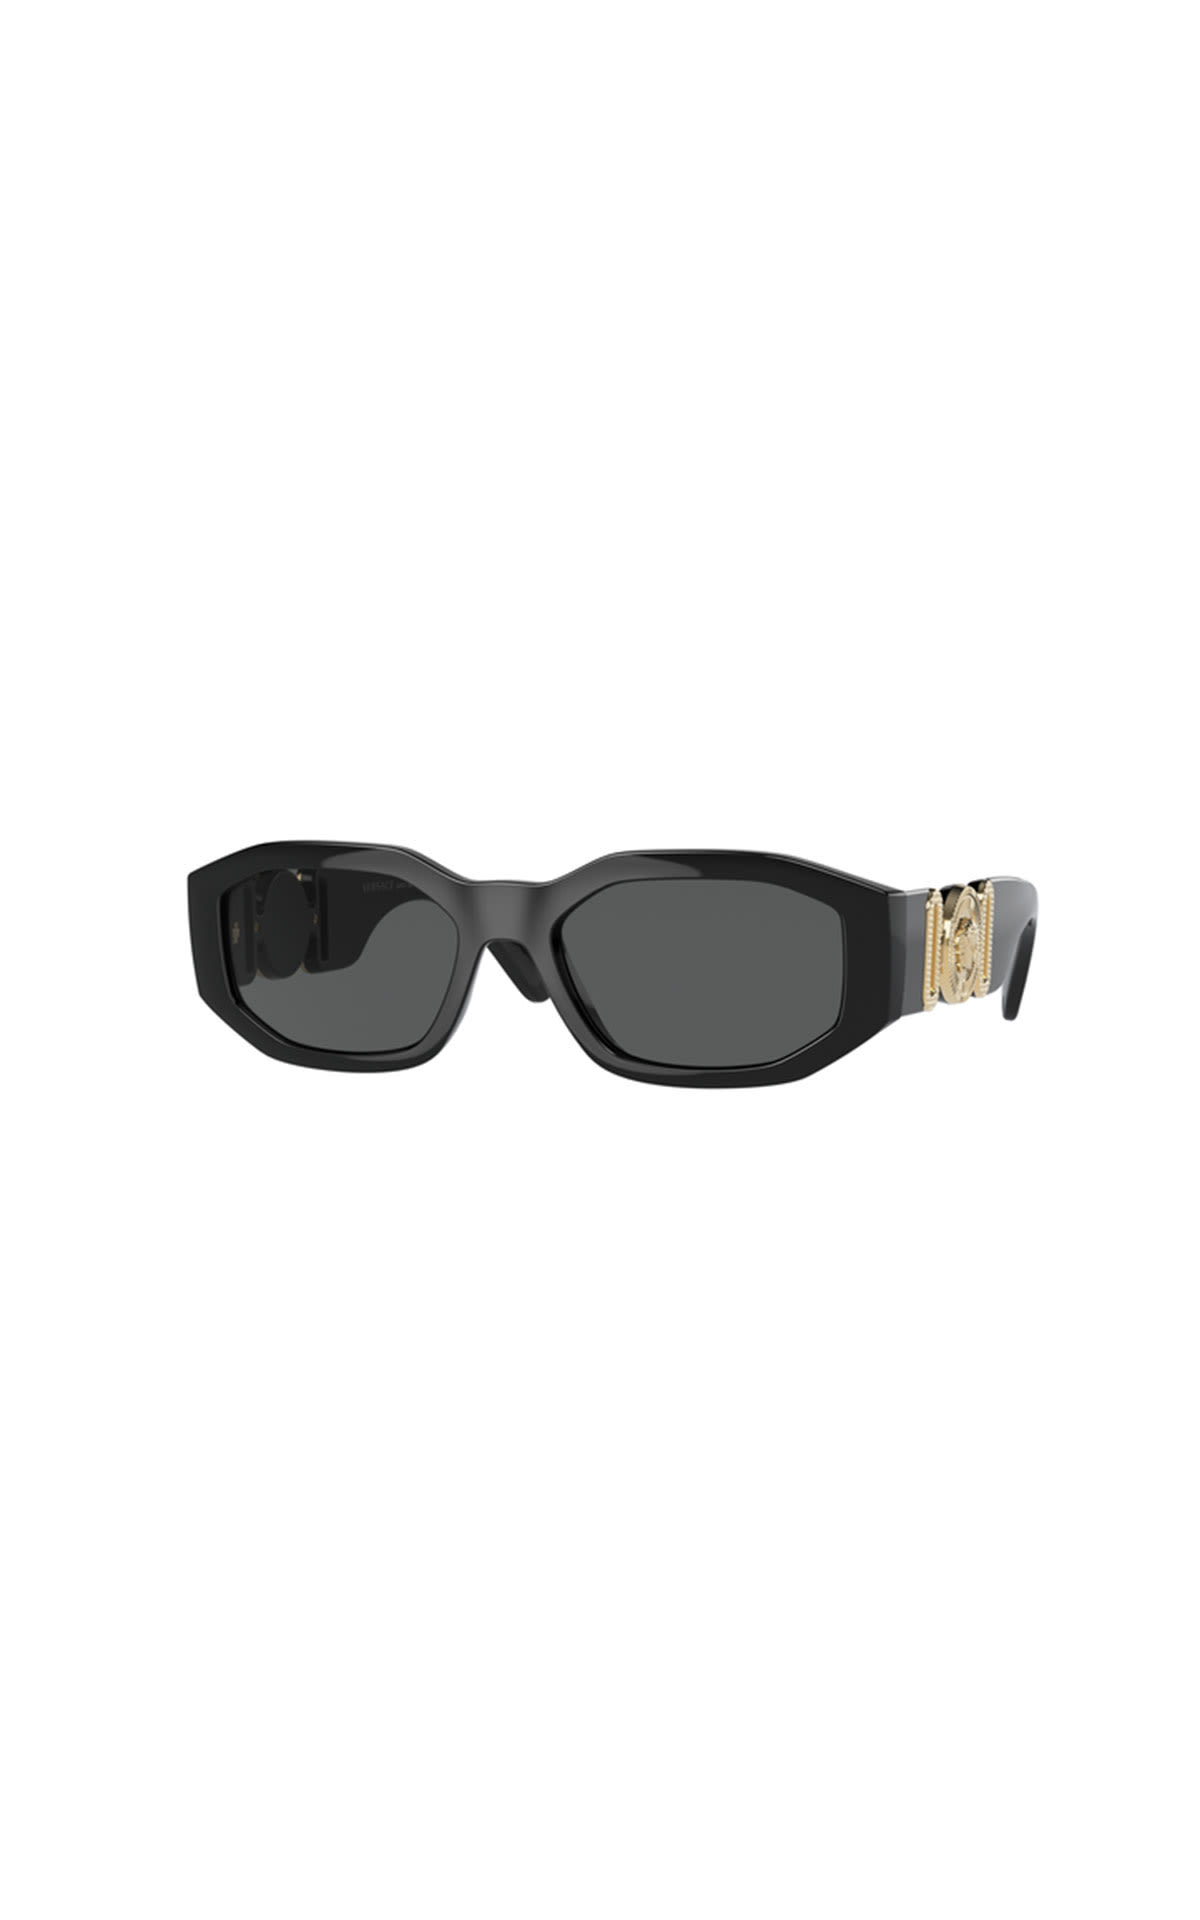 Gafas de sol negras Versace SunglassHut